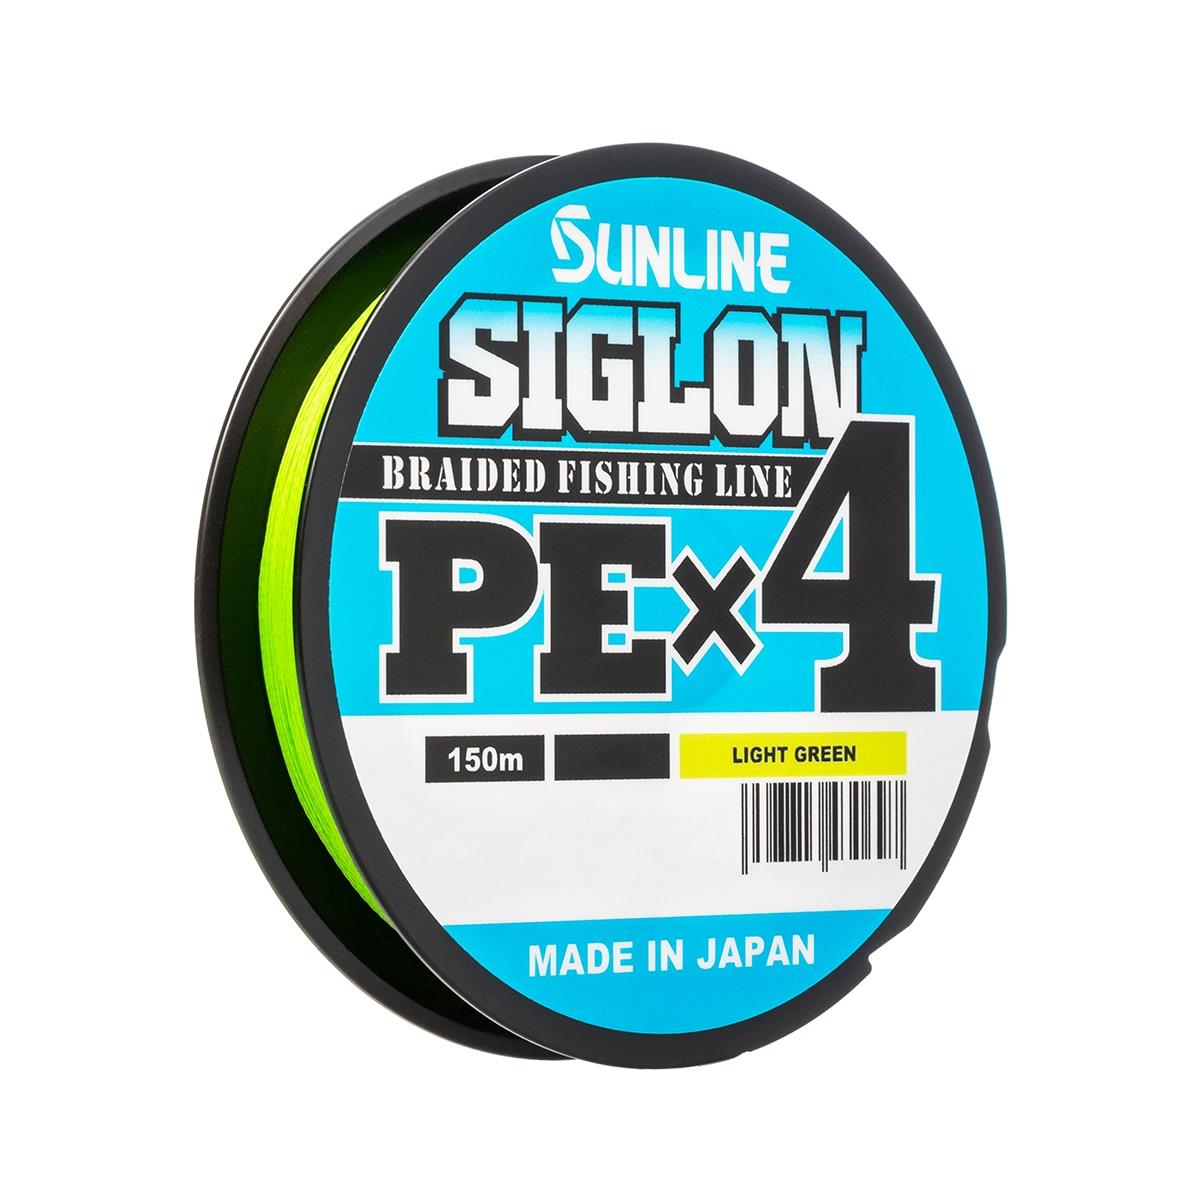 Шнур SIGLON PE×4 150 м (Light green) Sunline плетеный синтетический шнур truenergy